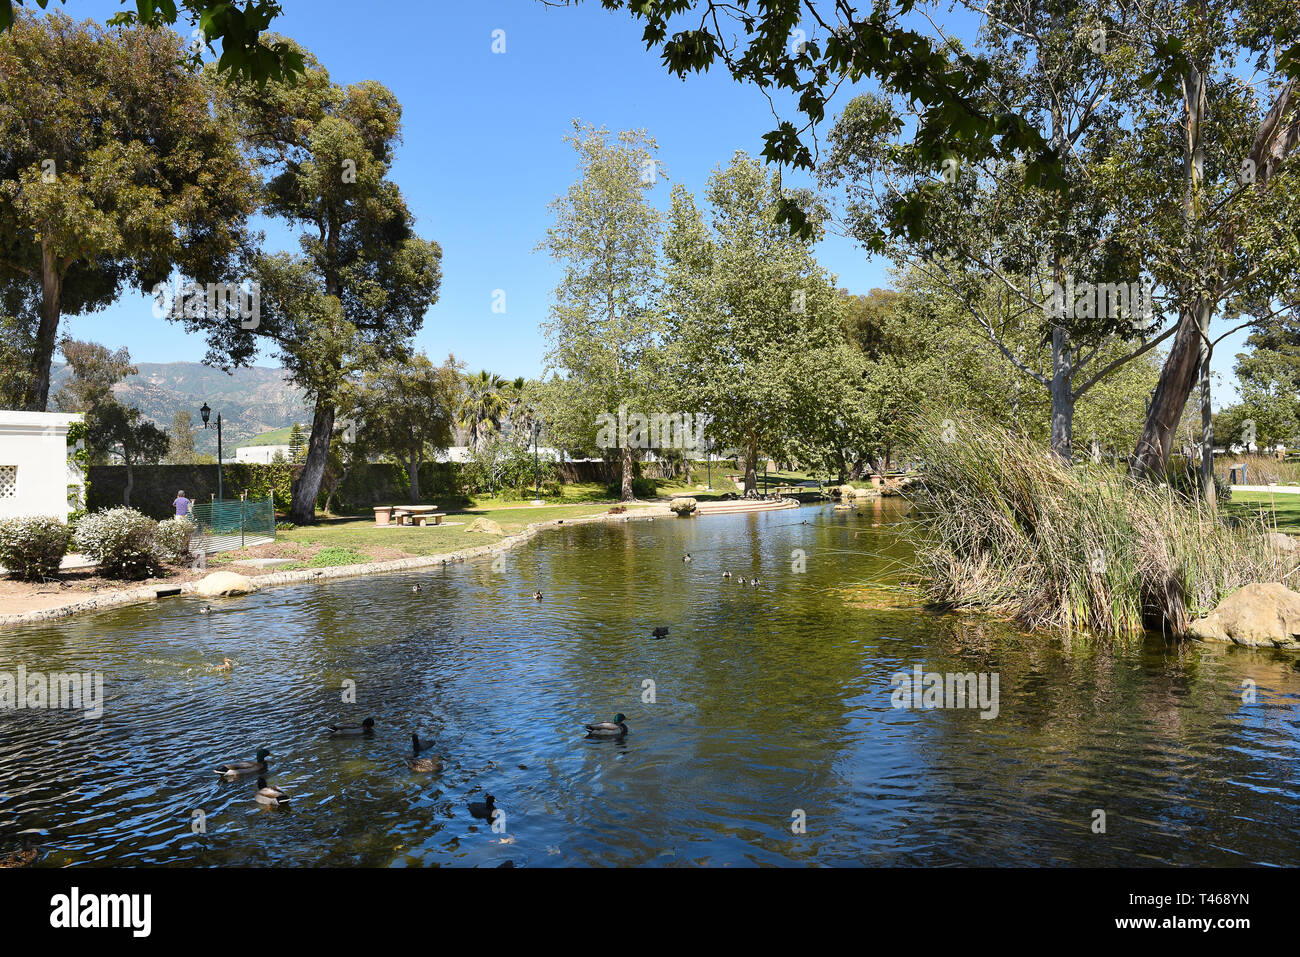 SANTA BARBARA, Kalifornien - 11. APRIL 2019: Teich am Chase Palm Park. Ein öffentlicher Park entlang der Uferpromenade mit Spiel-, Teich, Picknickplätze und ein wedd Stockfoto